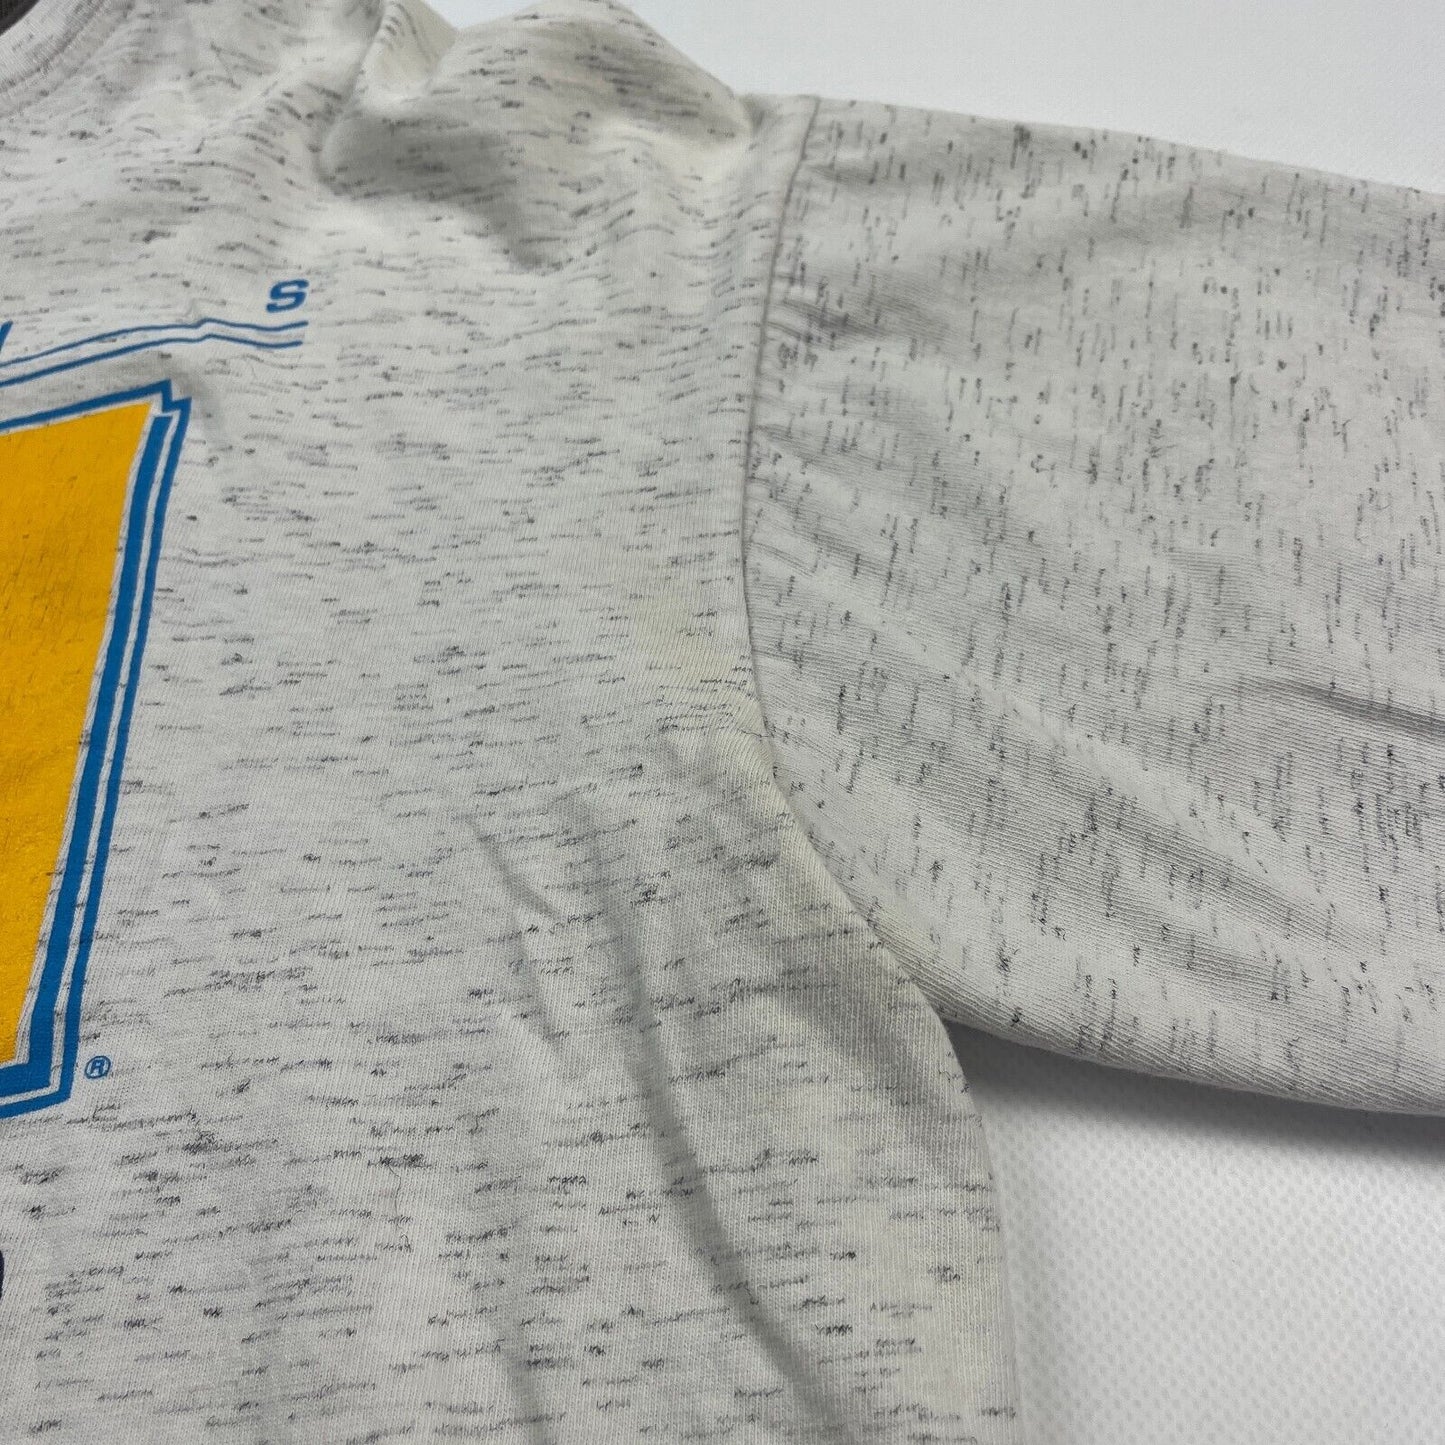 VINTAGE 1990 UCLA Bruins Collegiate Graphic T-Shirt sz XL Men